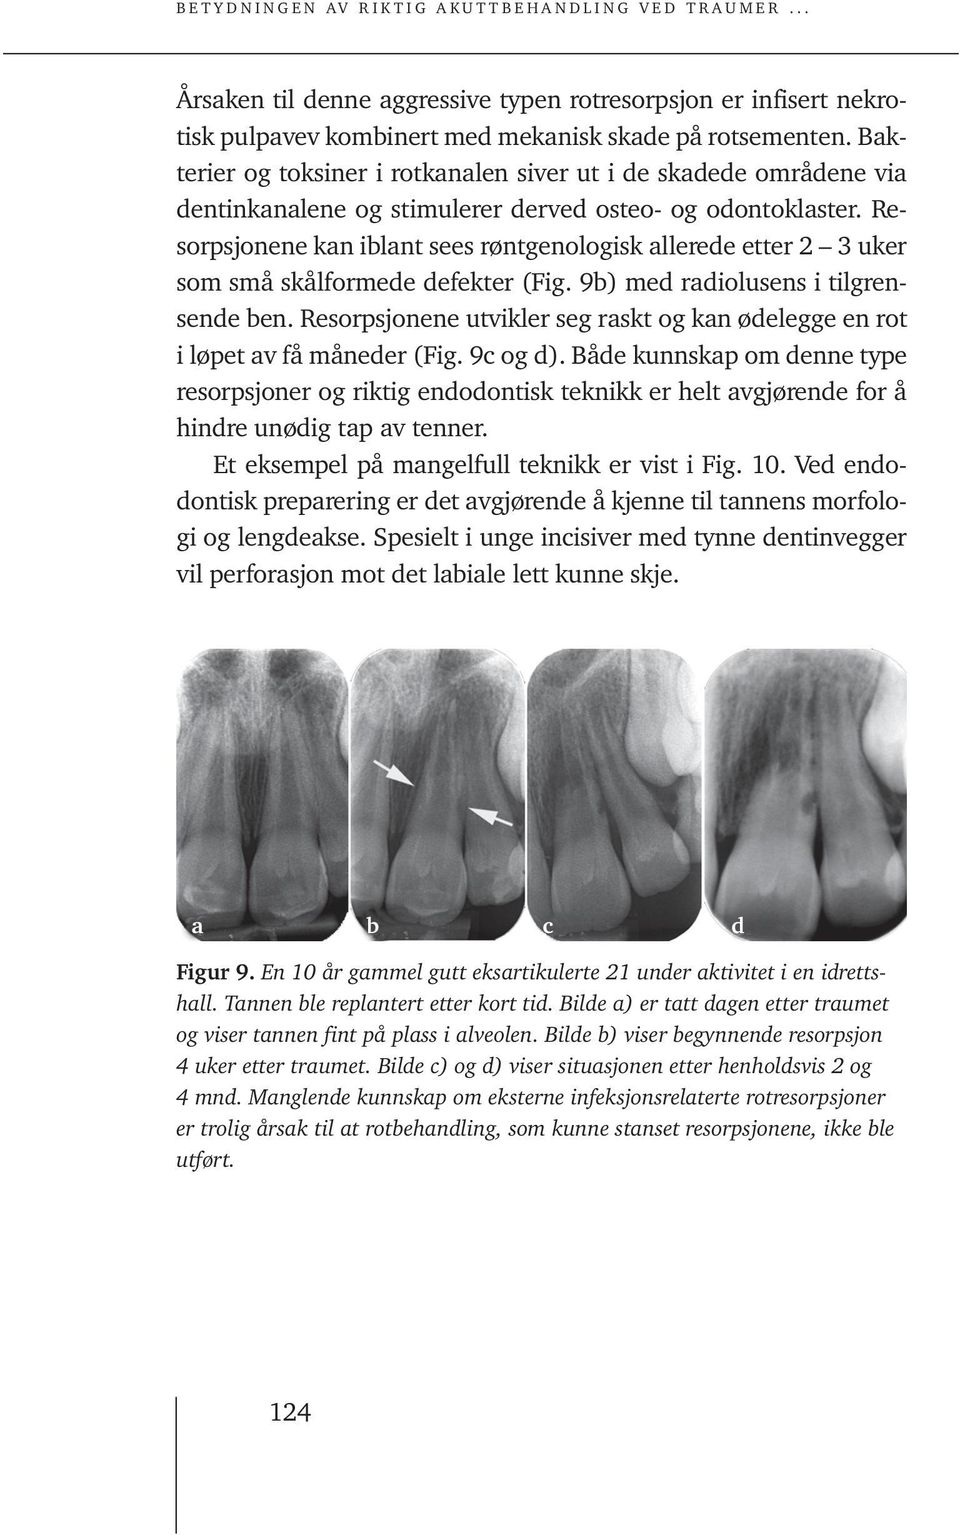 Resorpsjonene kan iblant sees røntgenologisk allerede etter 2 3 uker som små skålformede defekter (Fig. 9b) med radiolusens i tilgrensende ben.